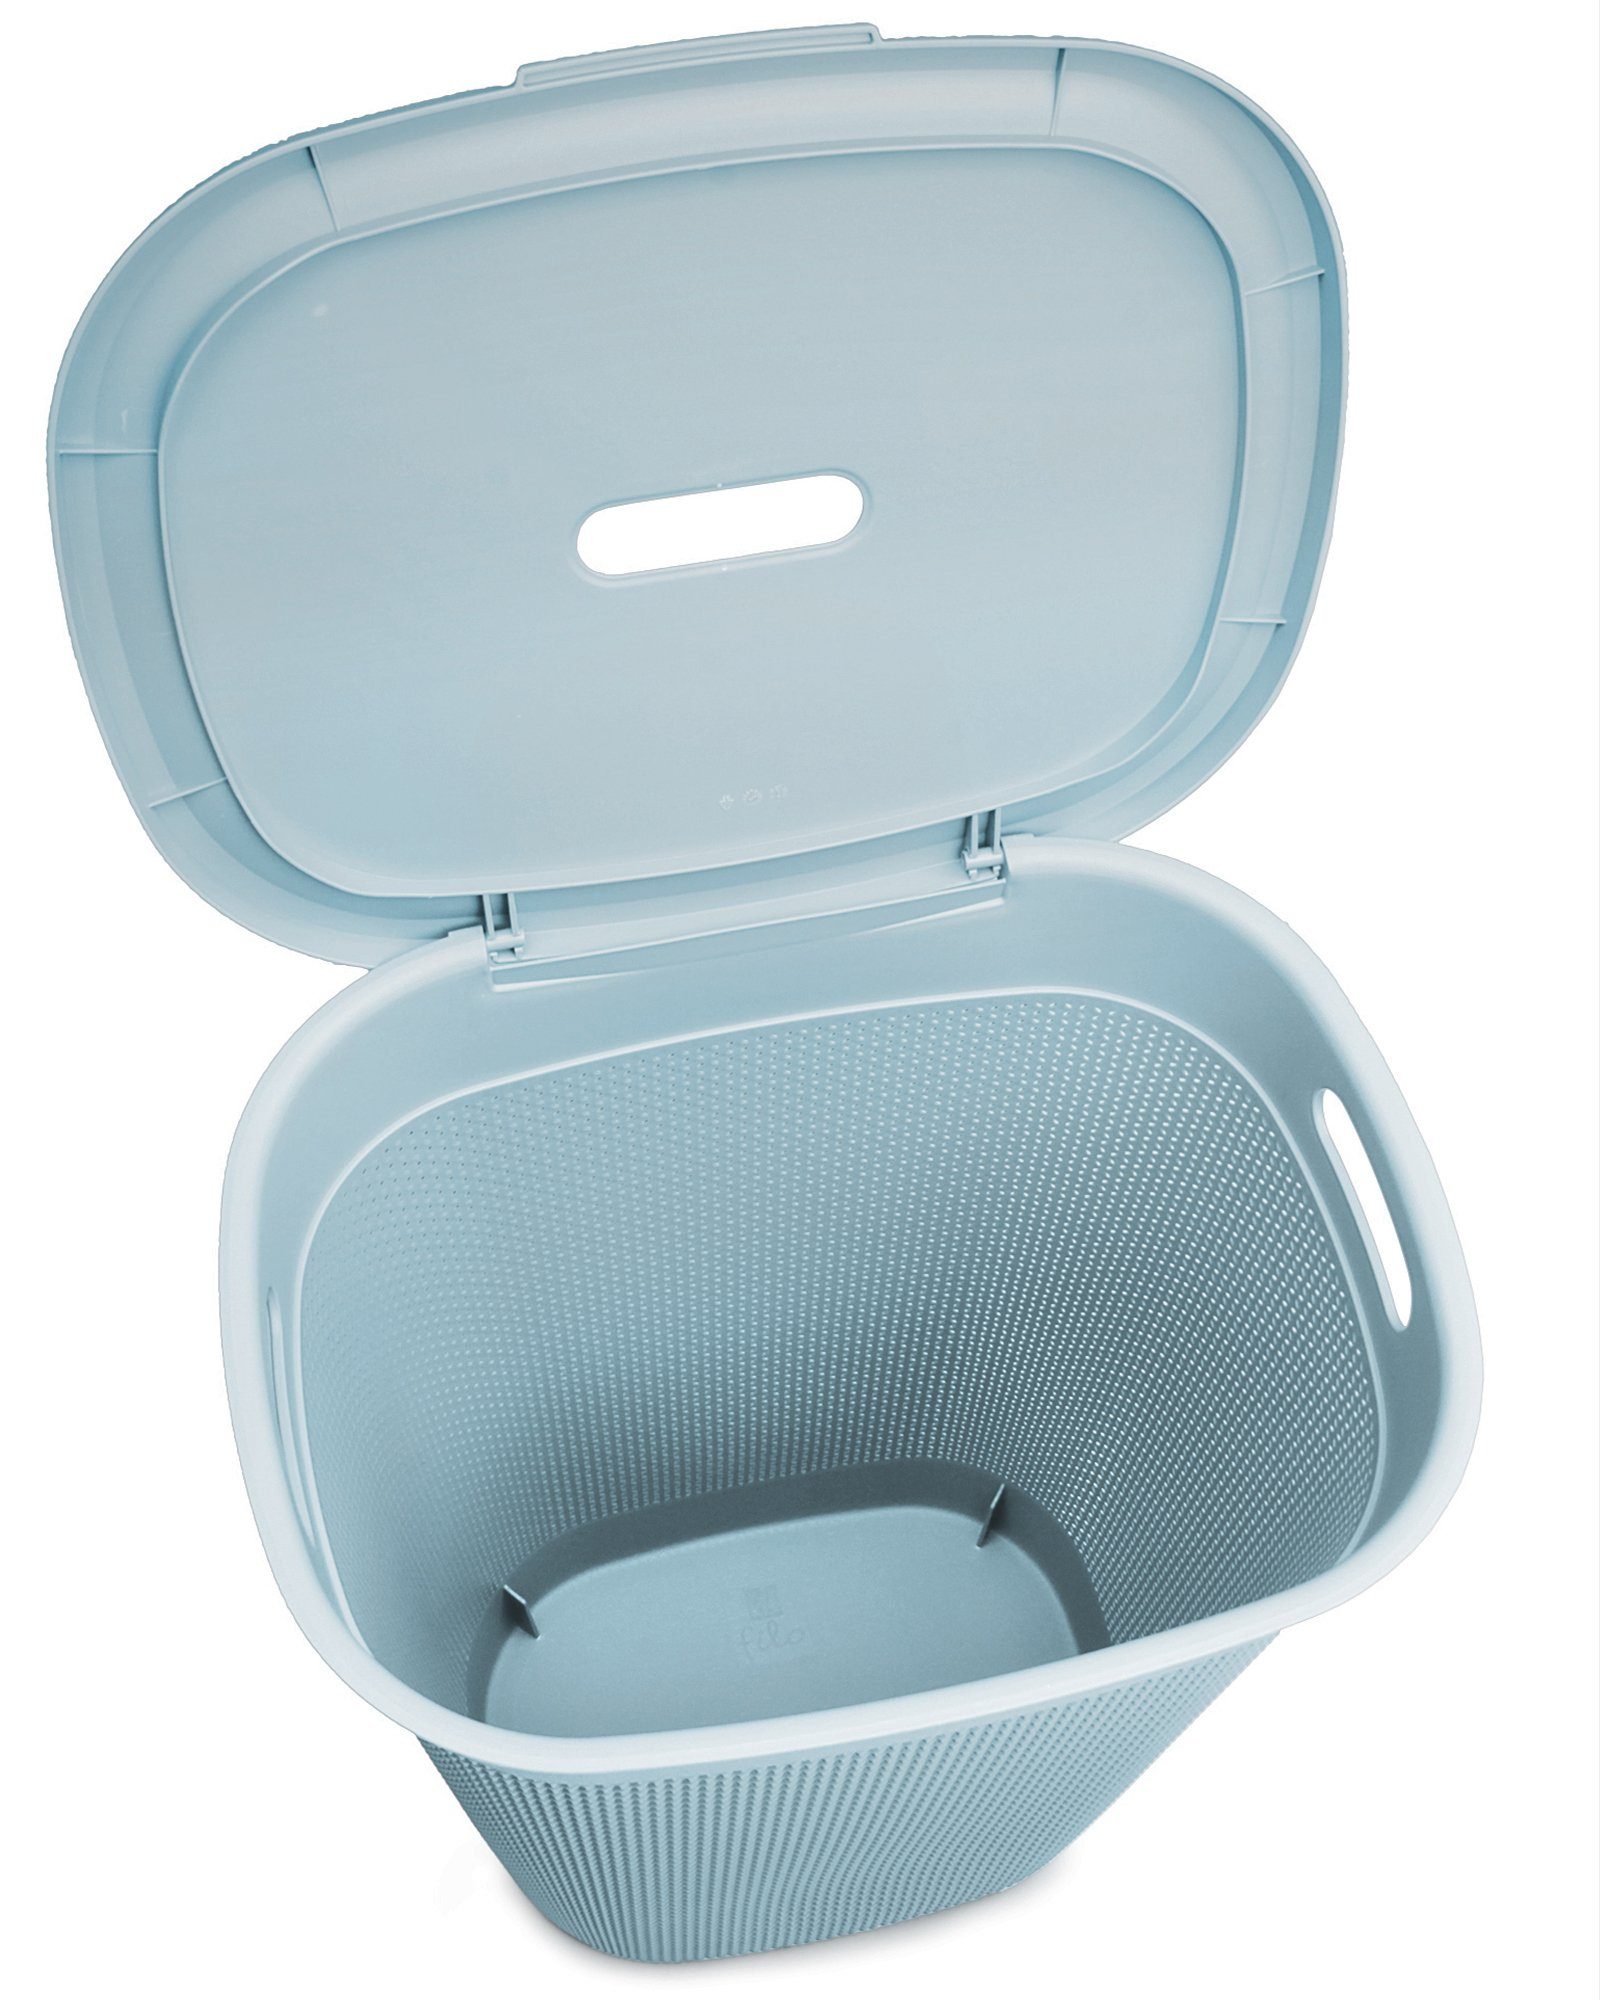 Wäschebox Kunststoff 55 edle Verarbeitung Wäschekorb italienisches aus Design, gut ONDIS24 Blau Filo Liter, belüftet, neues